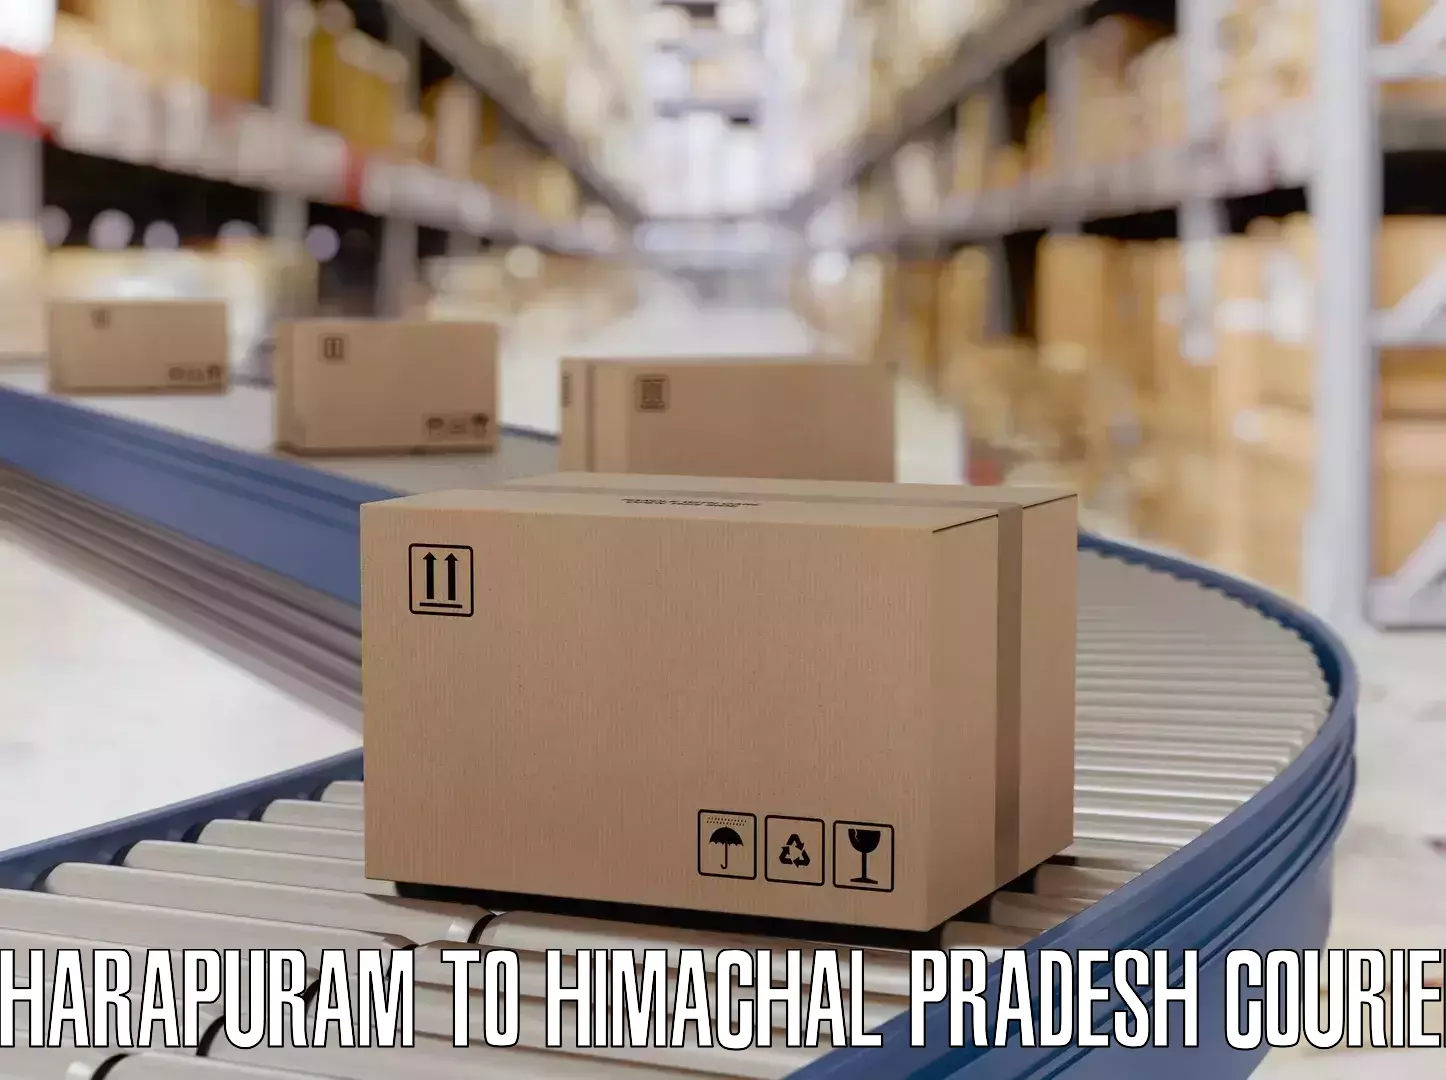 Electronic items luggage shipping Dharapuram to Haripurdhar